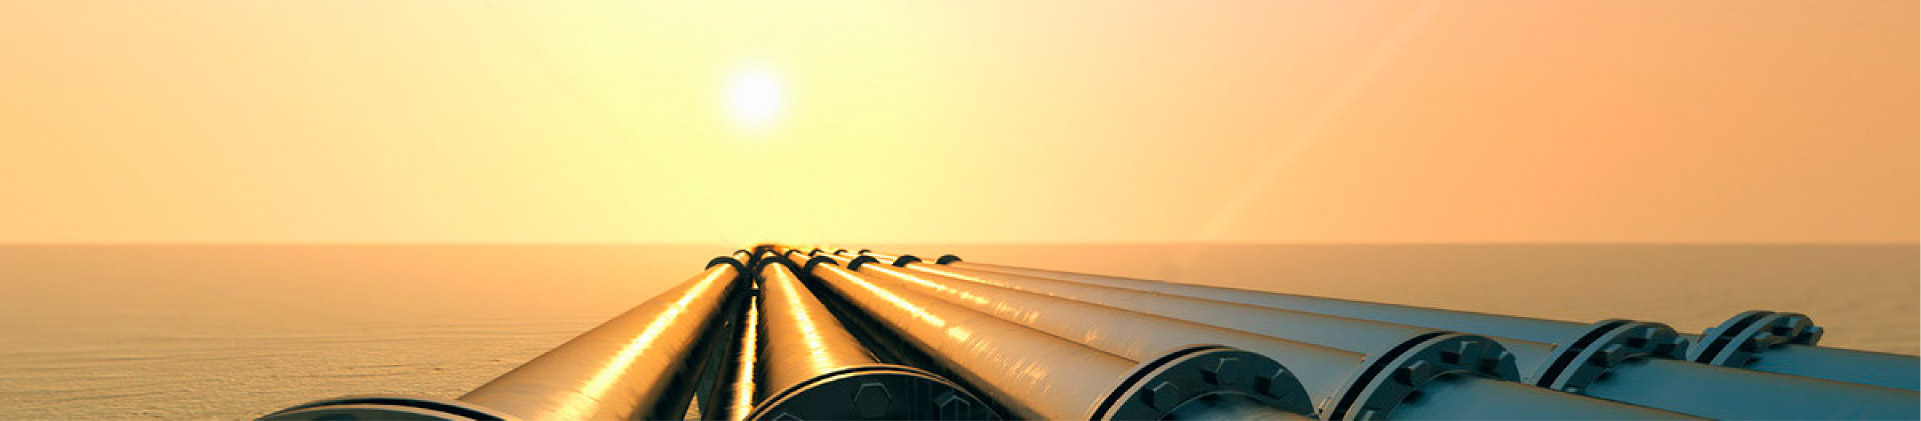 CNPC: il gas naturale diventerà un nuovo punto di crescita della cooperazione energetica tra Cina e